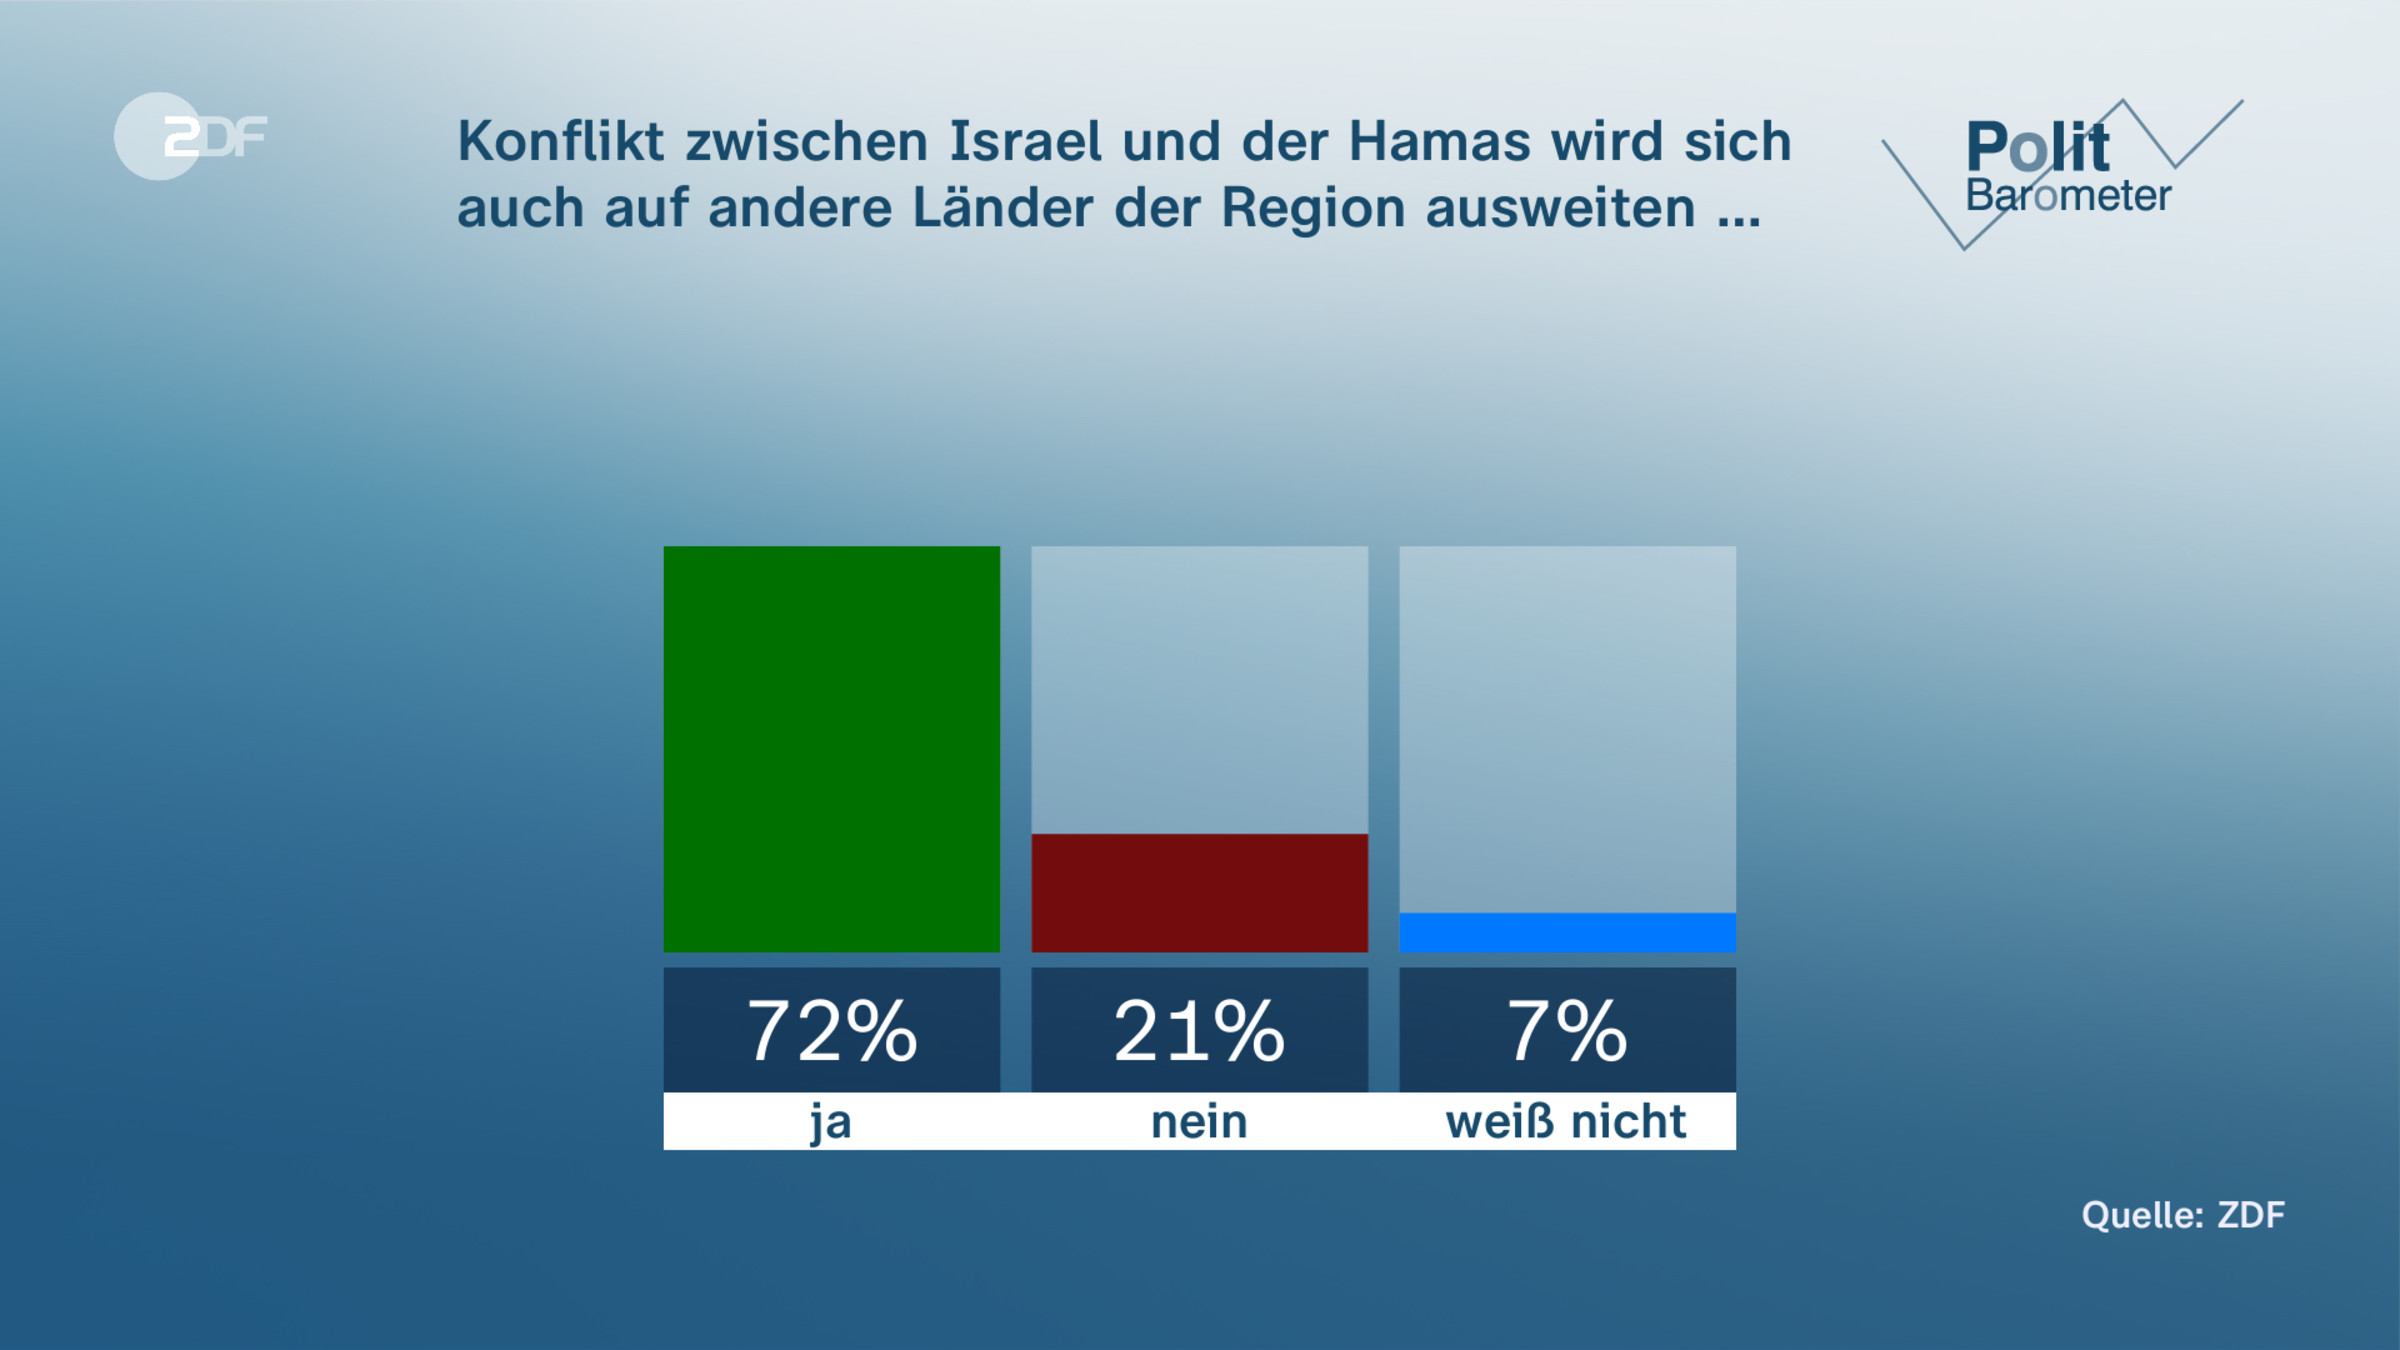 Konflikt zwischen Israel und der Hamas wird sich auch auf andere Länder der Region ausweiten …